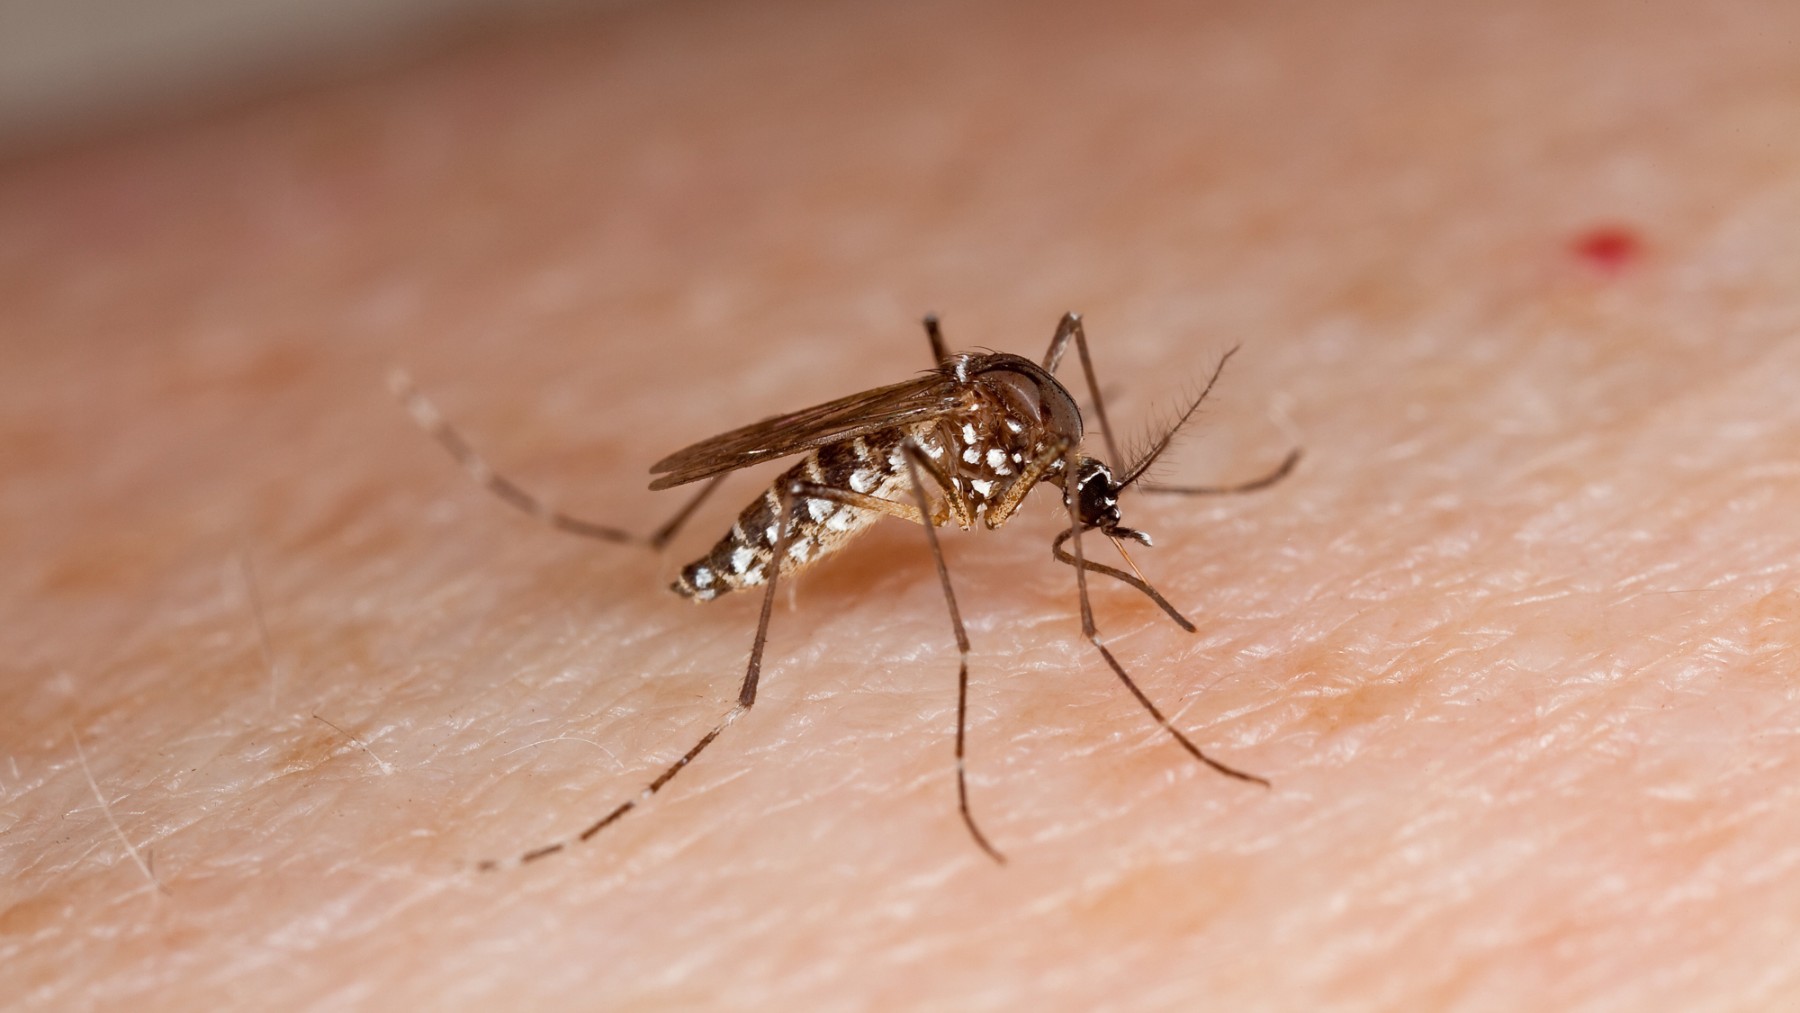 Mosquito tigre, vector del dengue. (Foto: Ep)